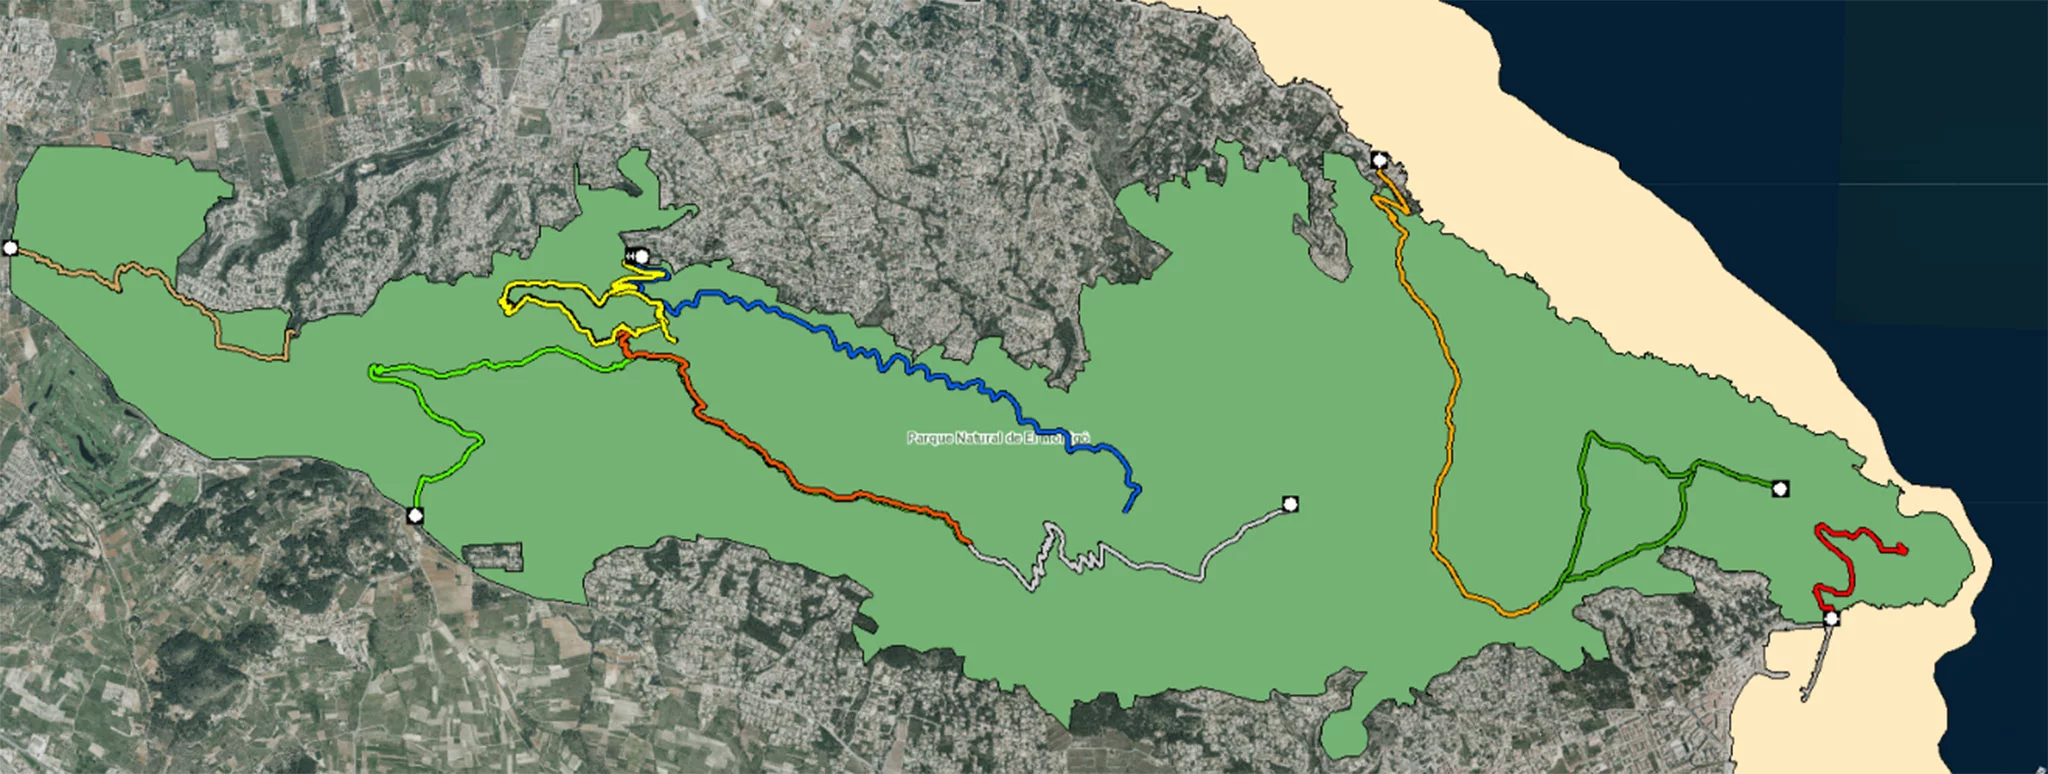 En amarillo, la ruta hacia la Cova de l’Aigua (Fuente: Institut Cartogràfic Valencià)